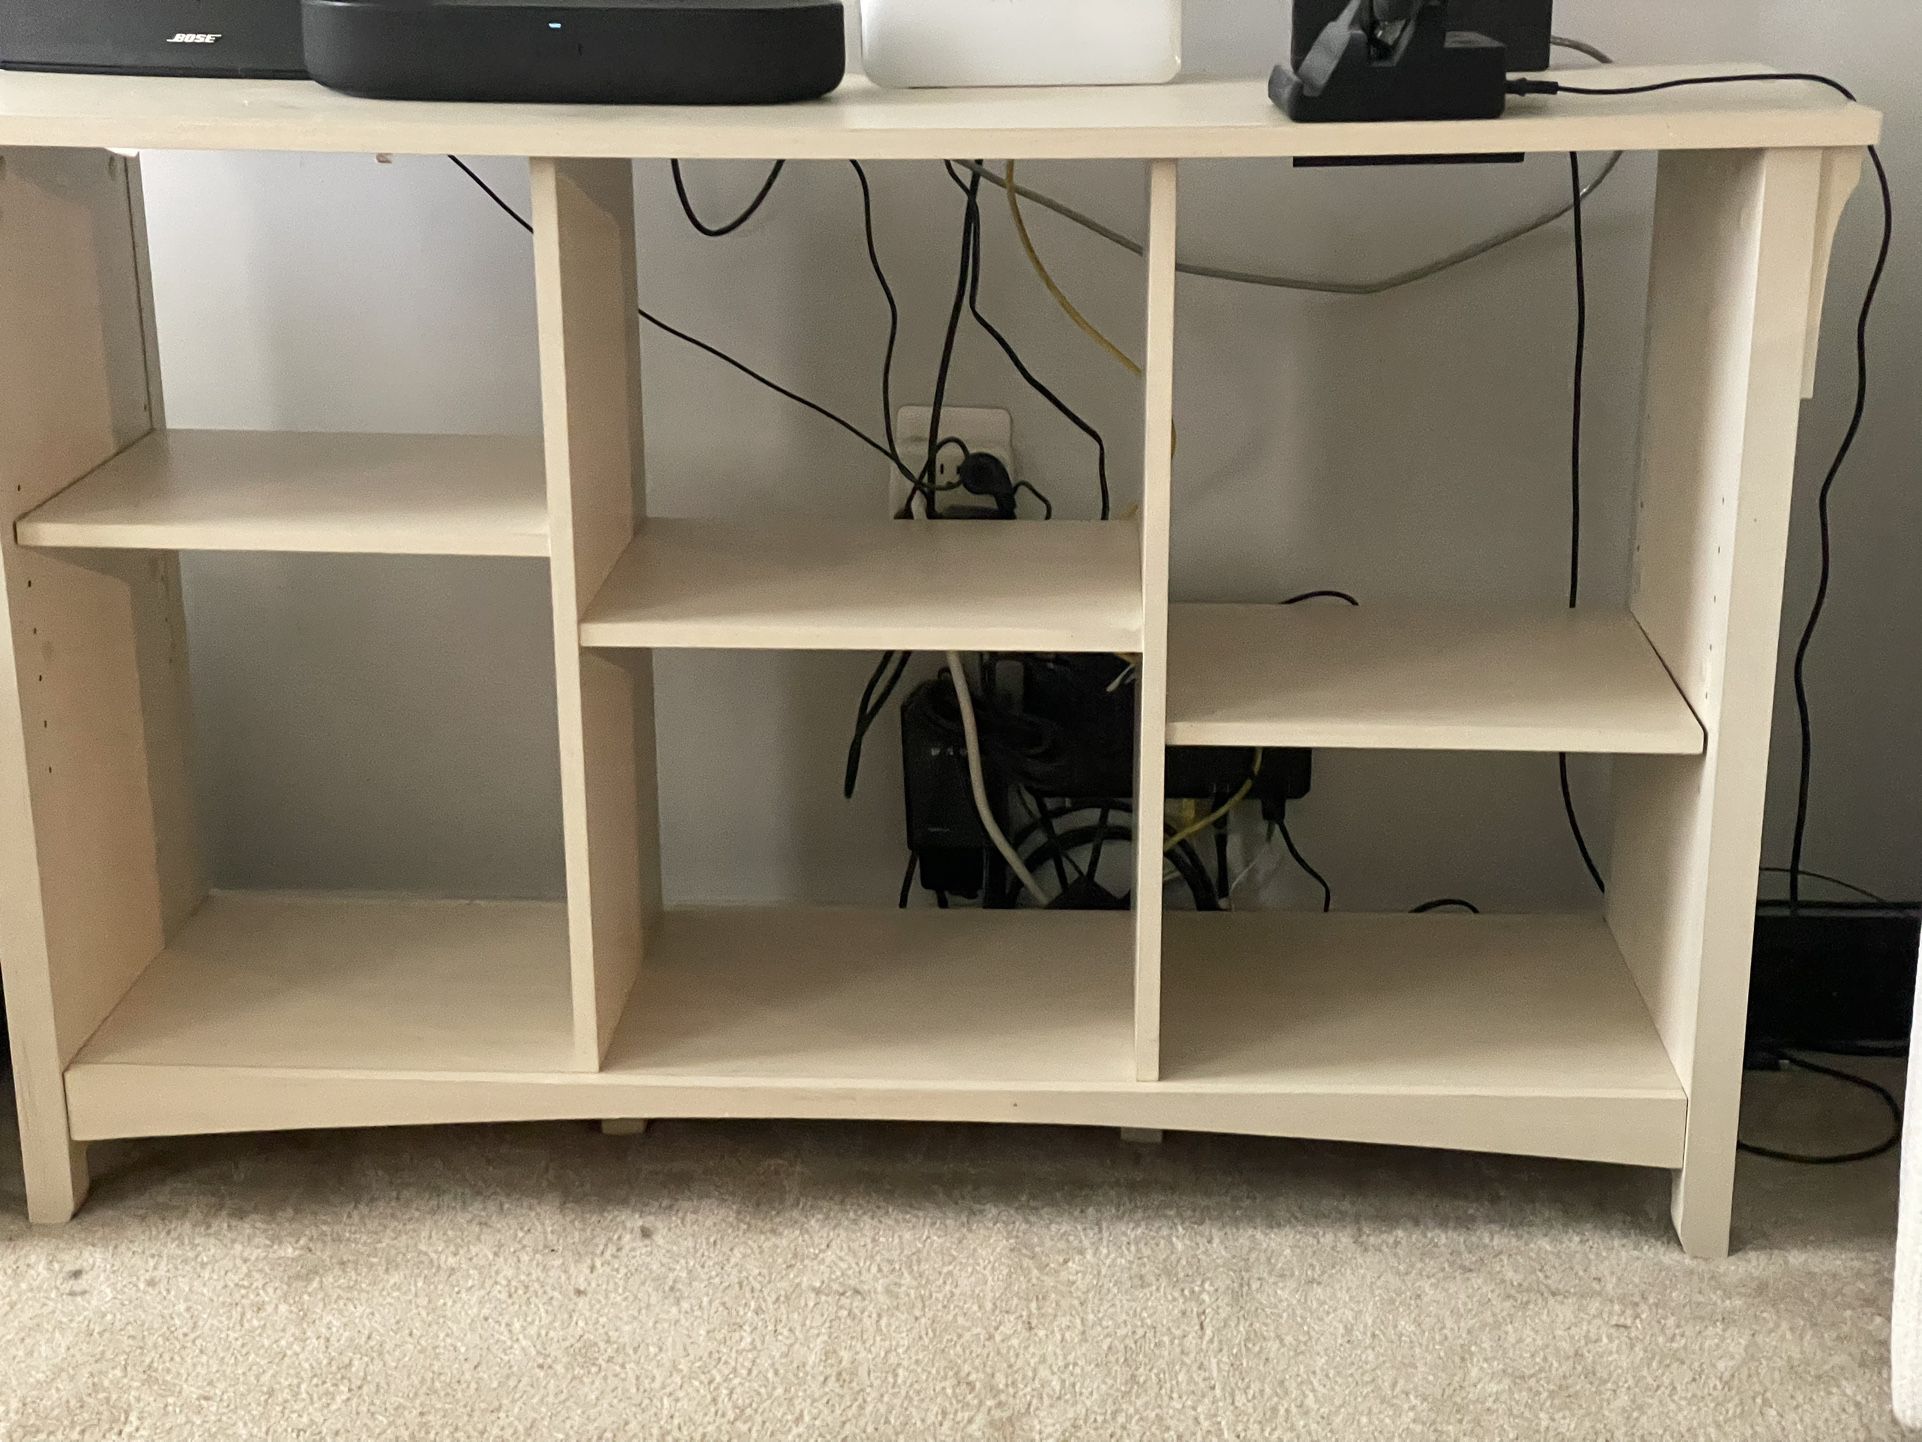 Bookshelf|TV Stand